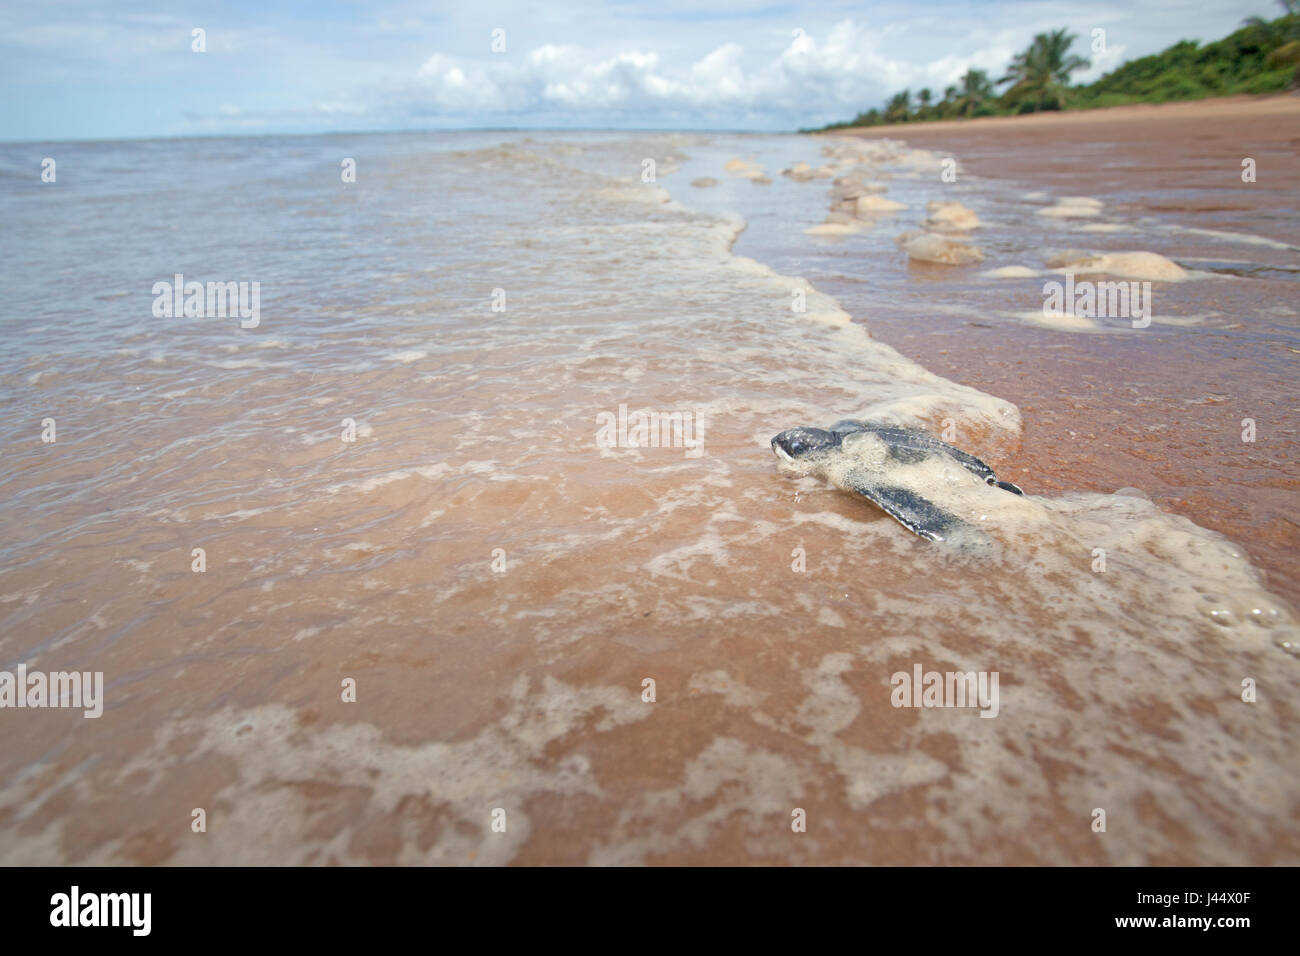 Photo grand angle d'une jeune tortue luth sur la plage sur son chemin vers la mer Banque D'Images